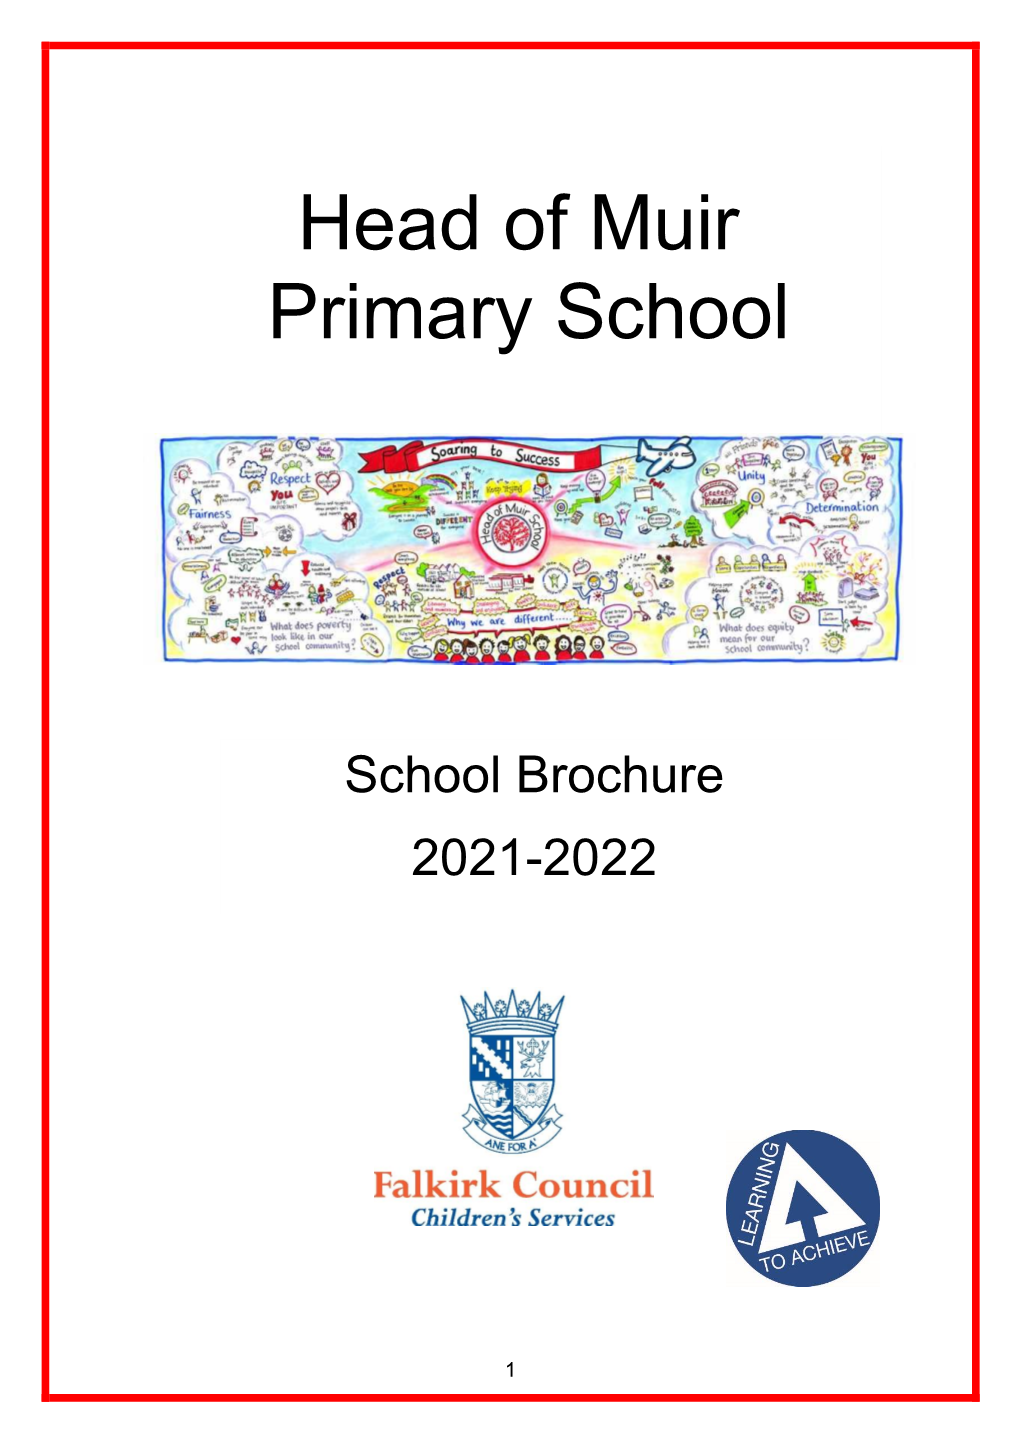 Head of Muir Primary School Handbook 2021-22